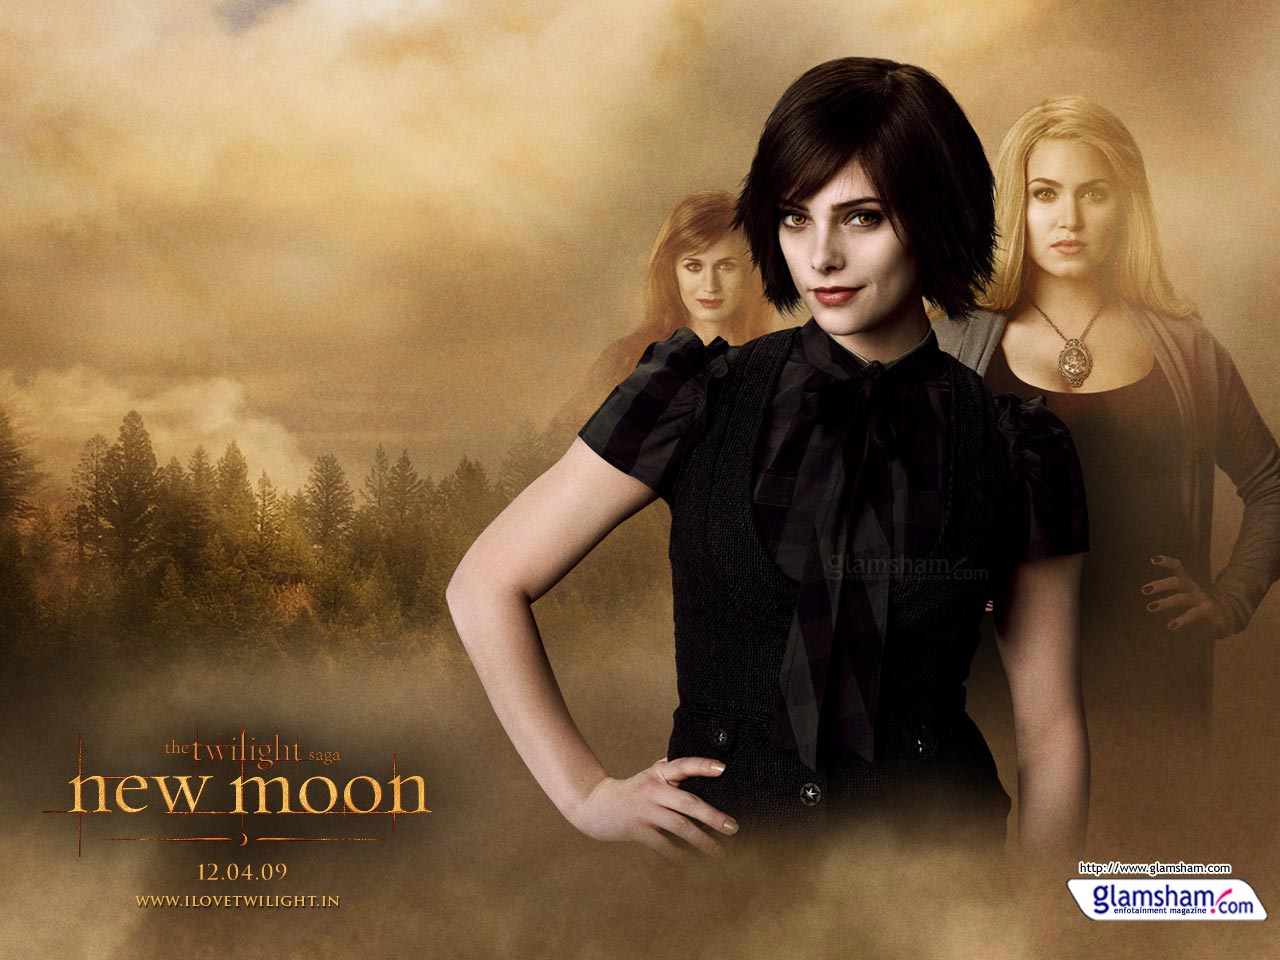 The Twilight Saga: New Moon #7